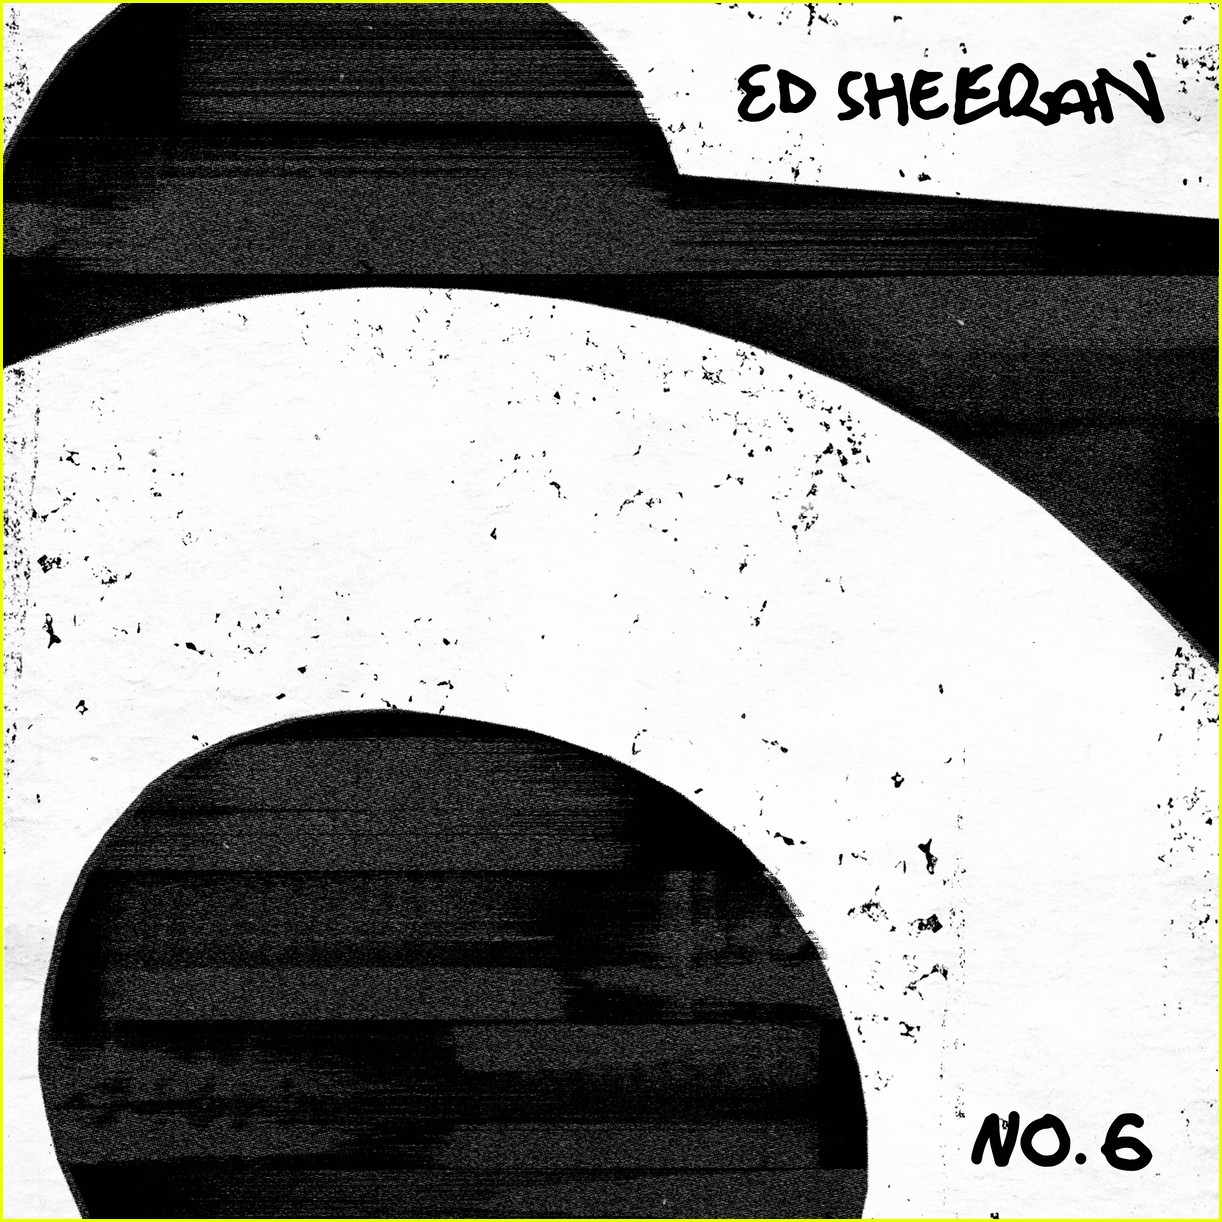 ed sheeran collab album details 01